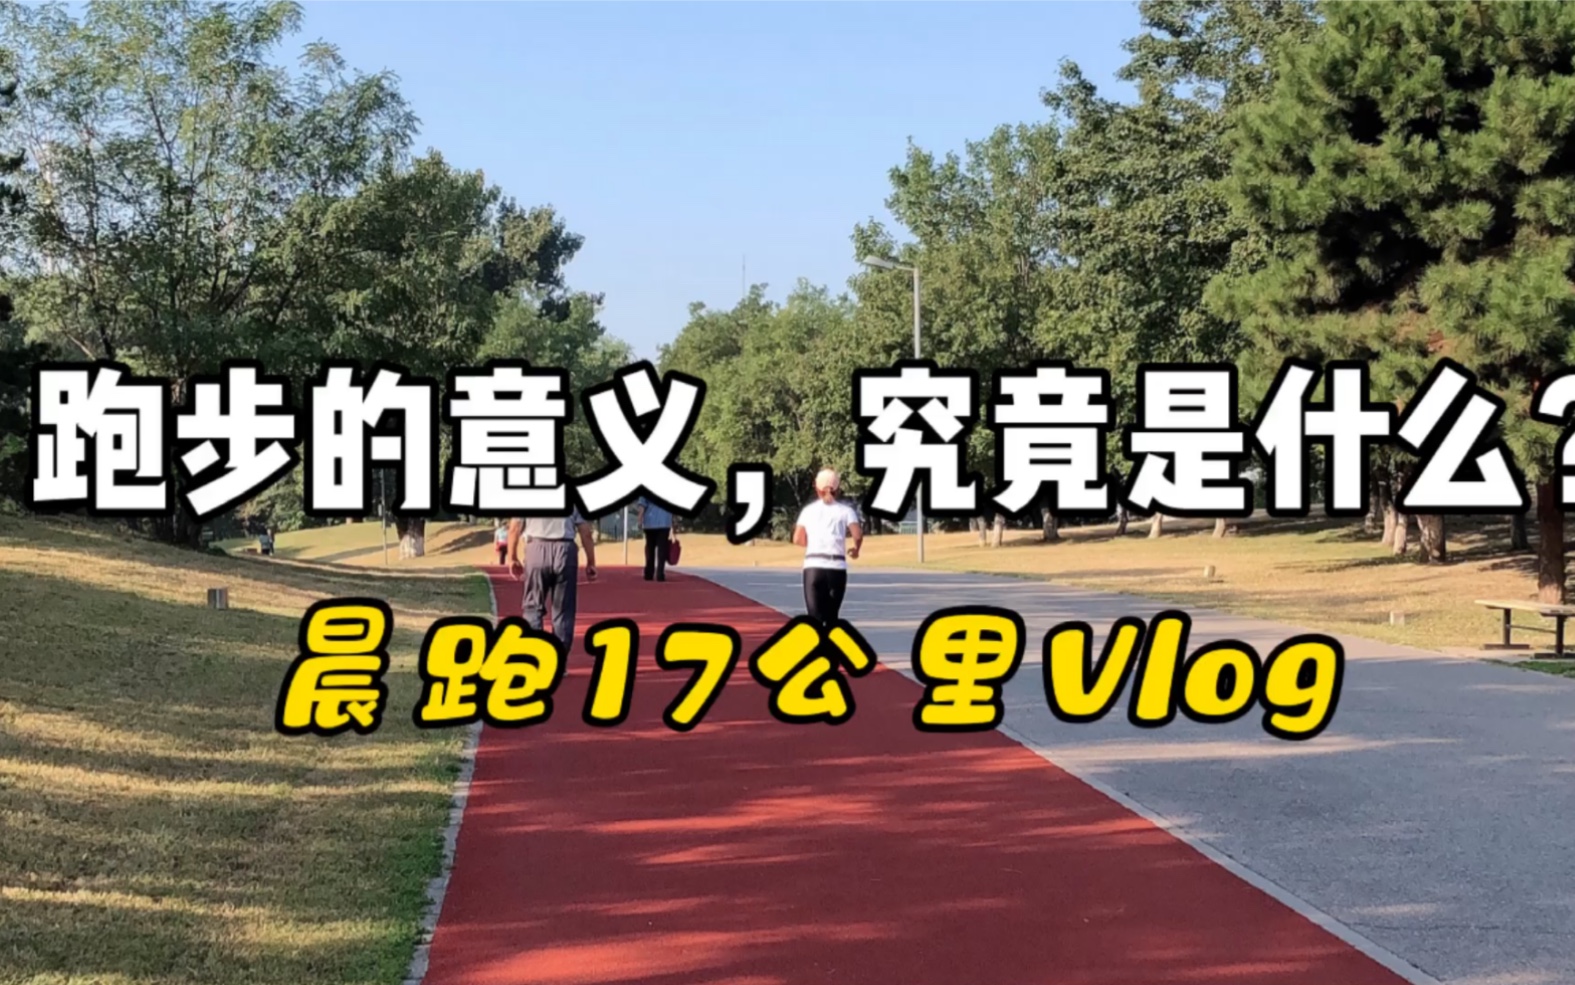 Vlog-晨跑17公里，跑步的意义，究竟是什么？自律生活/跑步打卡